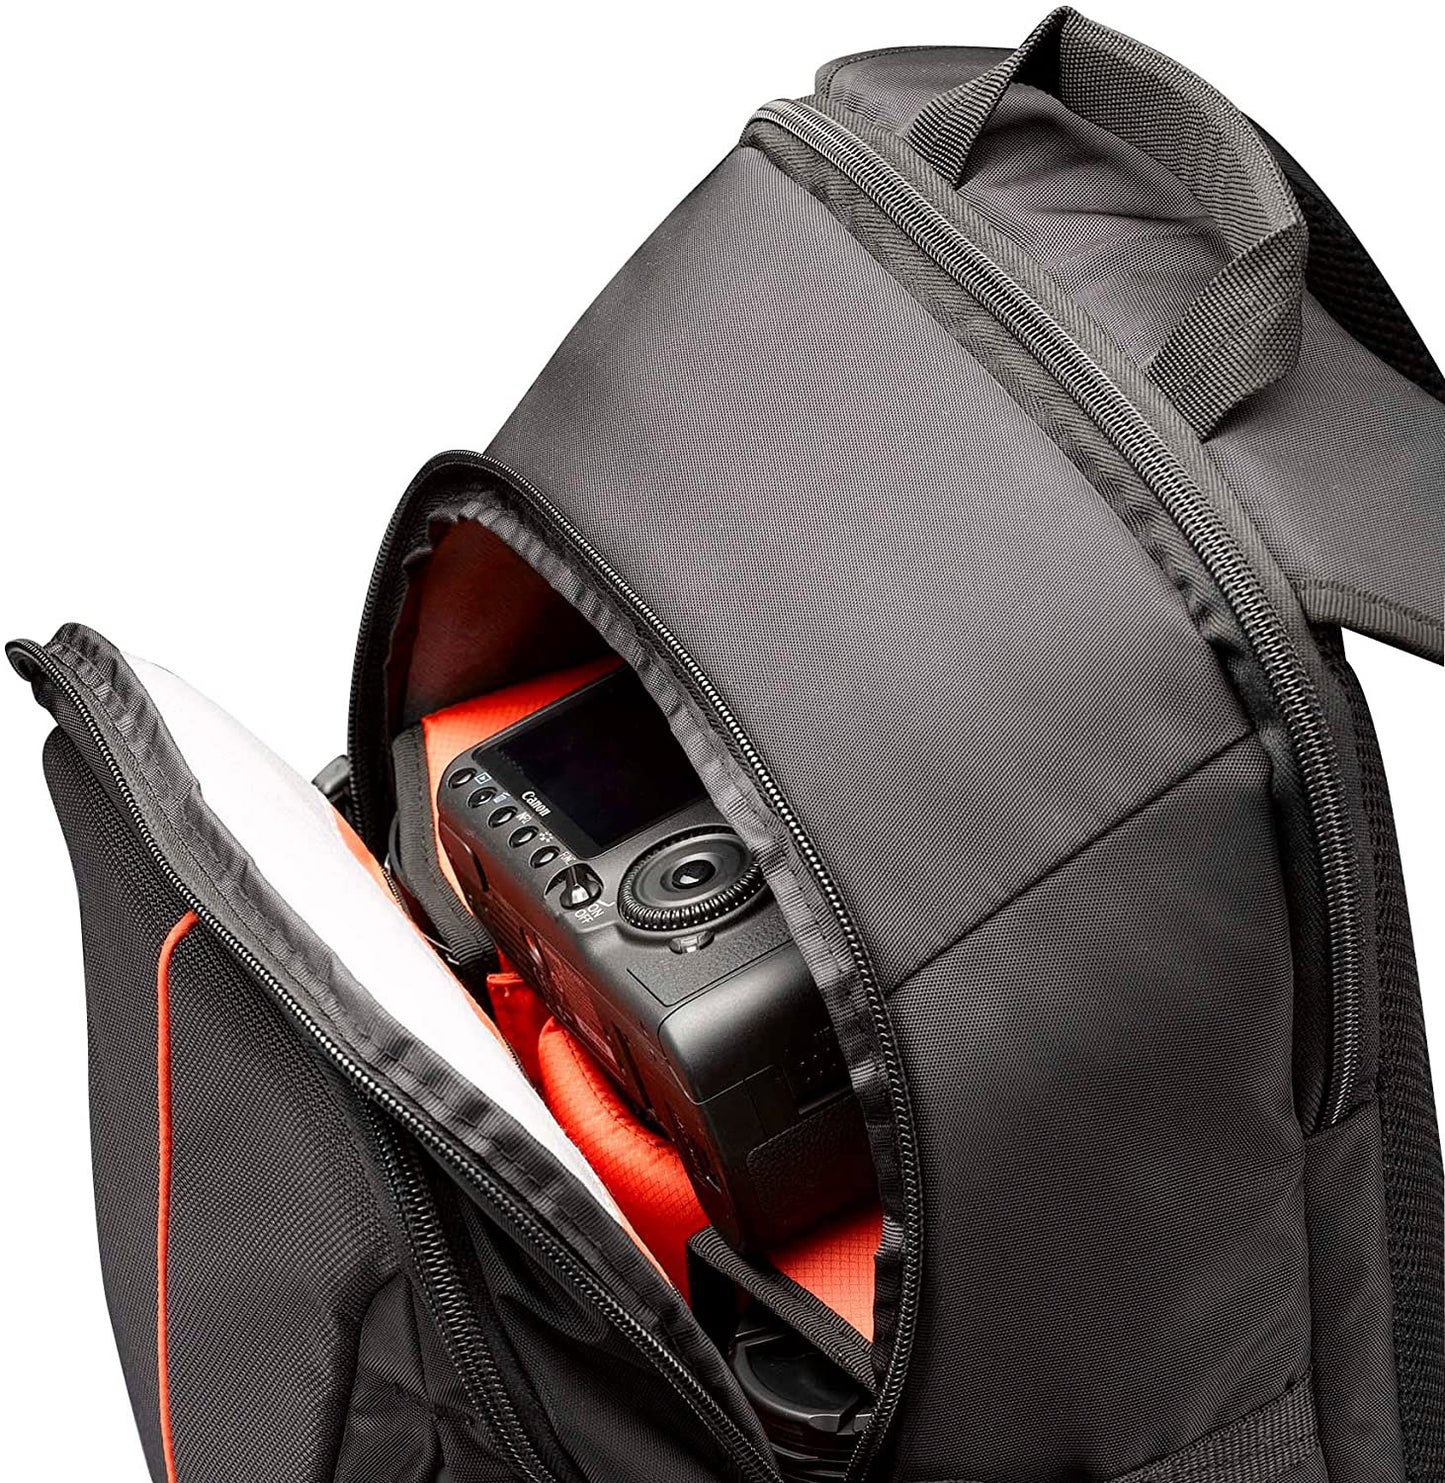 Case Logic Dcb309 Black Slr Camera Backpack